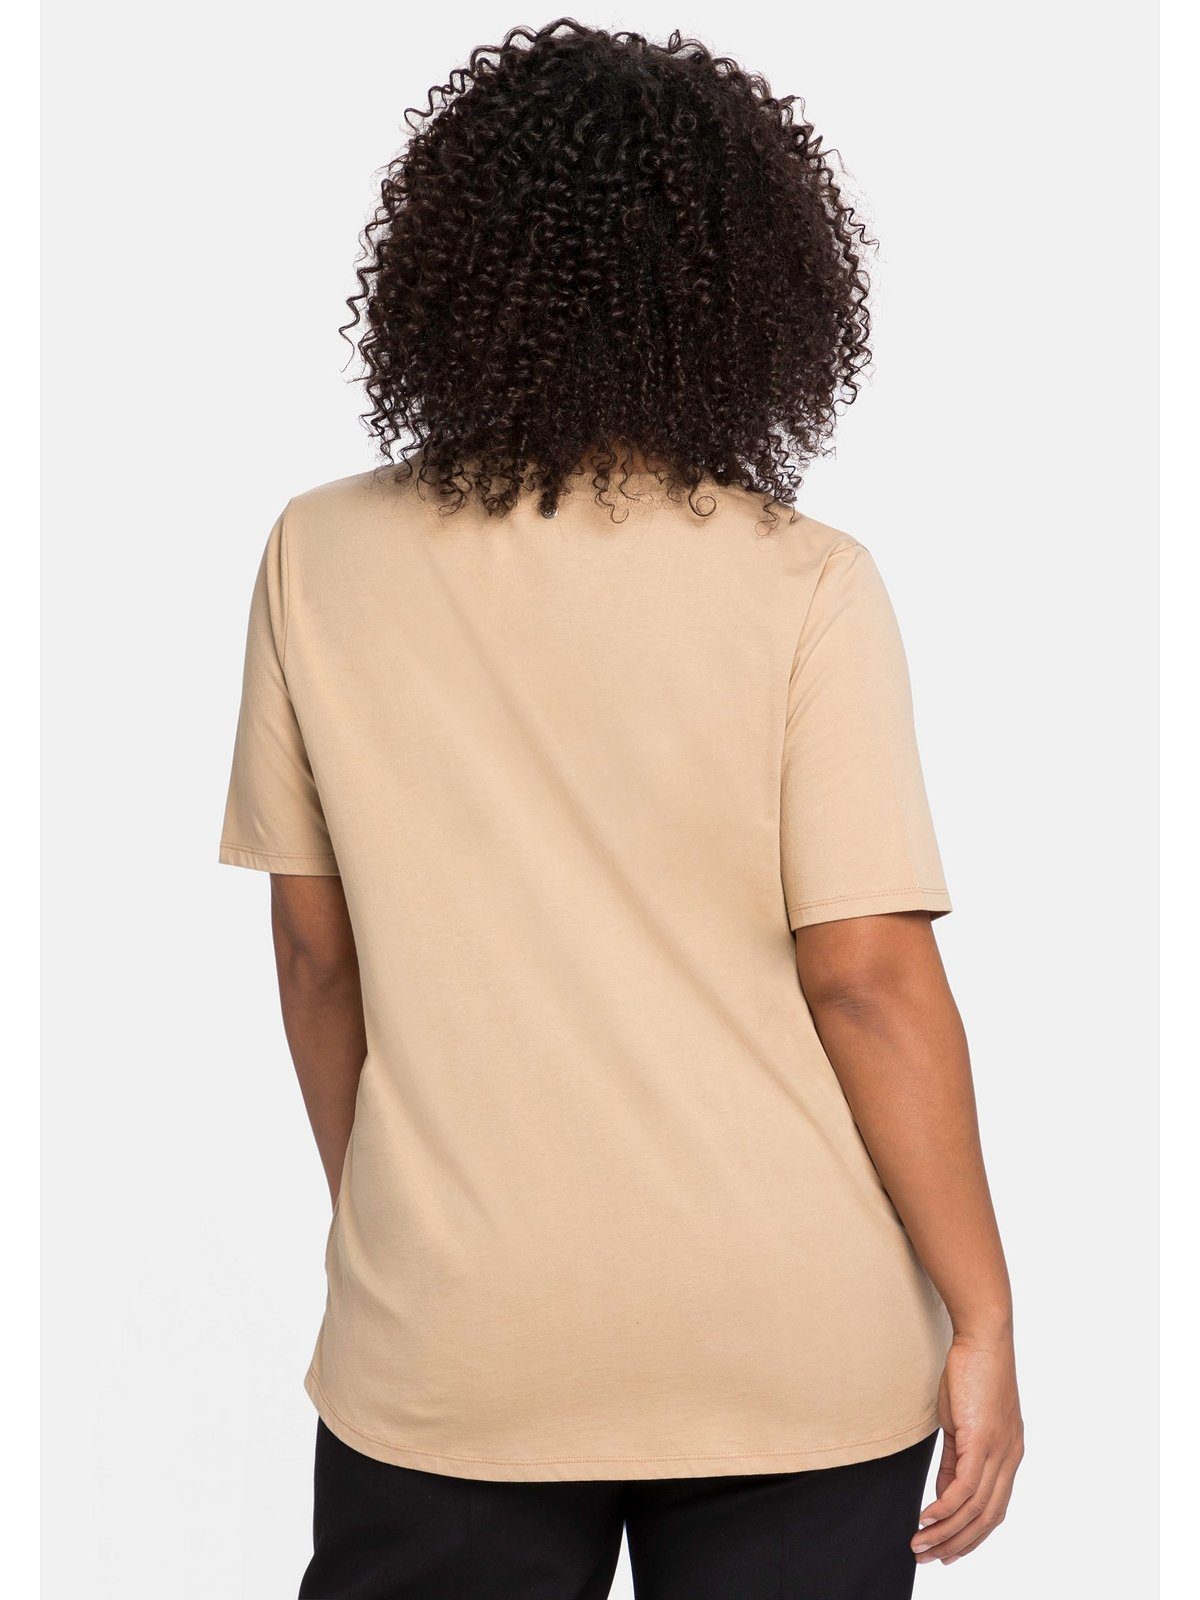 camelfarben Größen Sheego Falte Große in V-Ausschnitt, am T-Shirt mit A-Linie